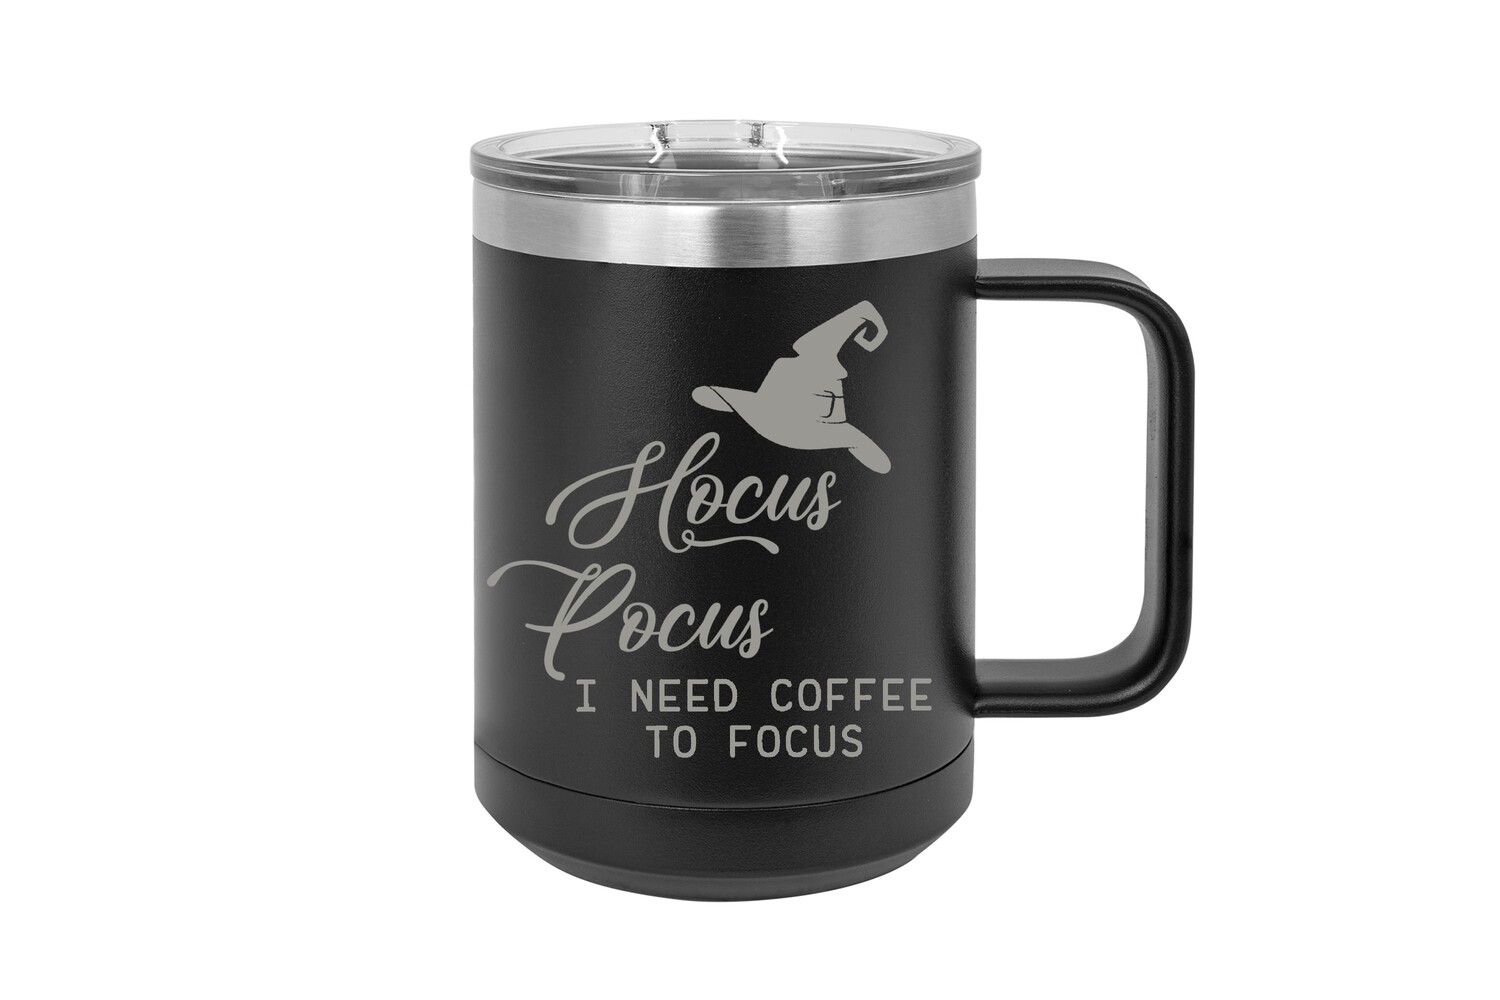 Hocus Pocus I need Coffee to Focus 15 oz Insulated Mug